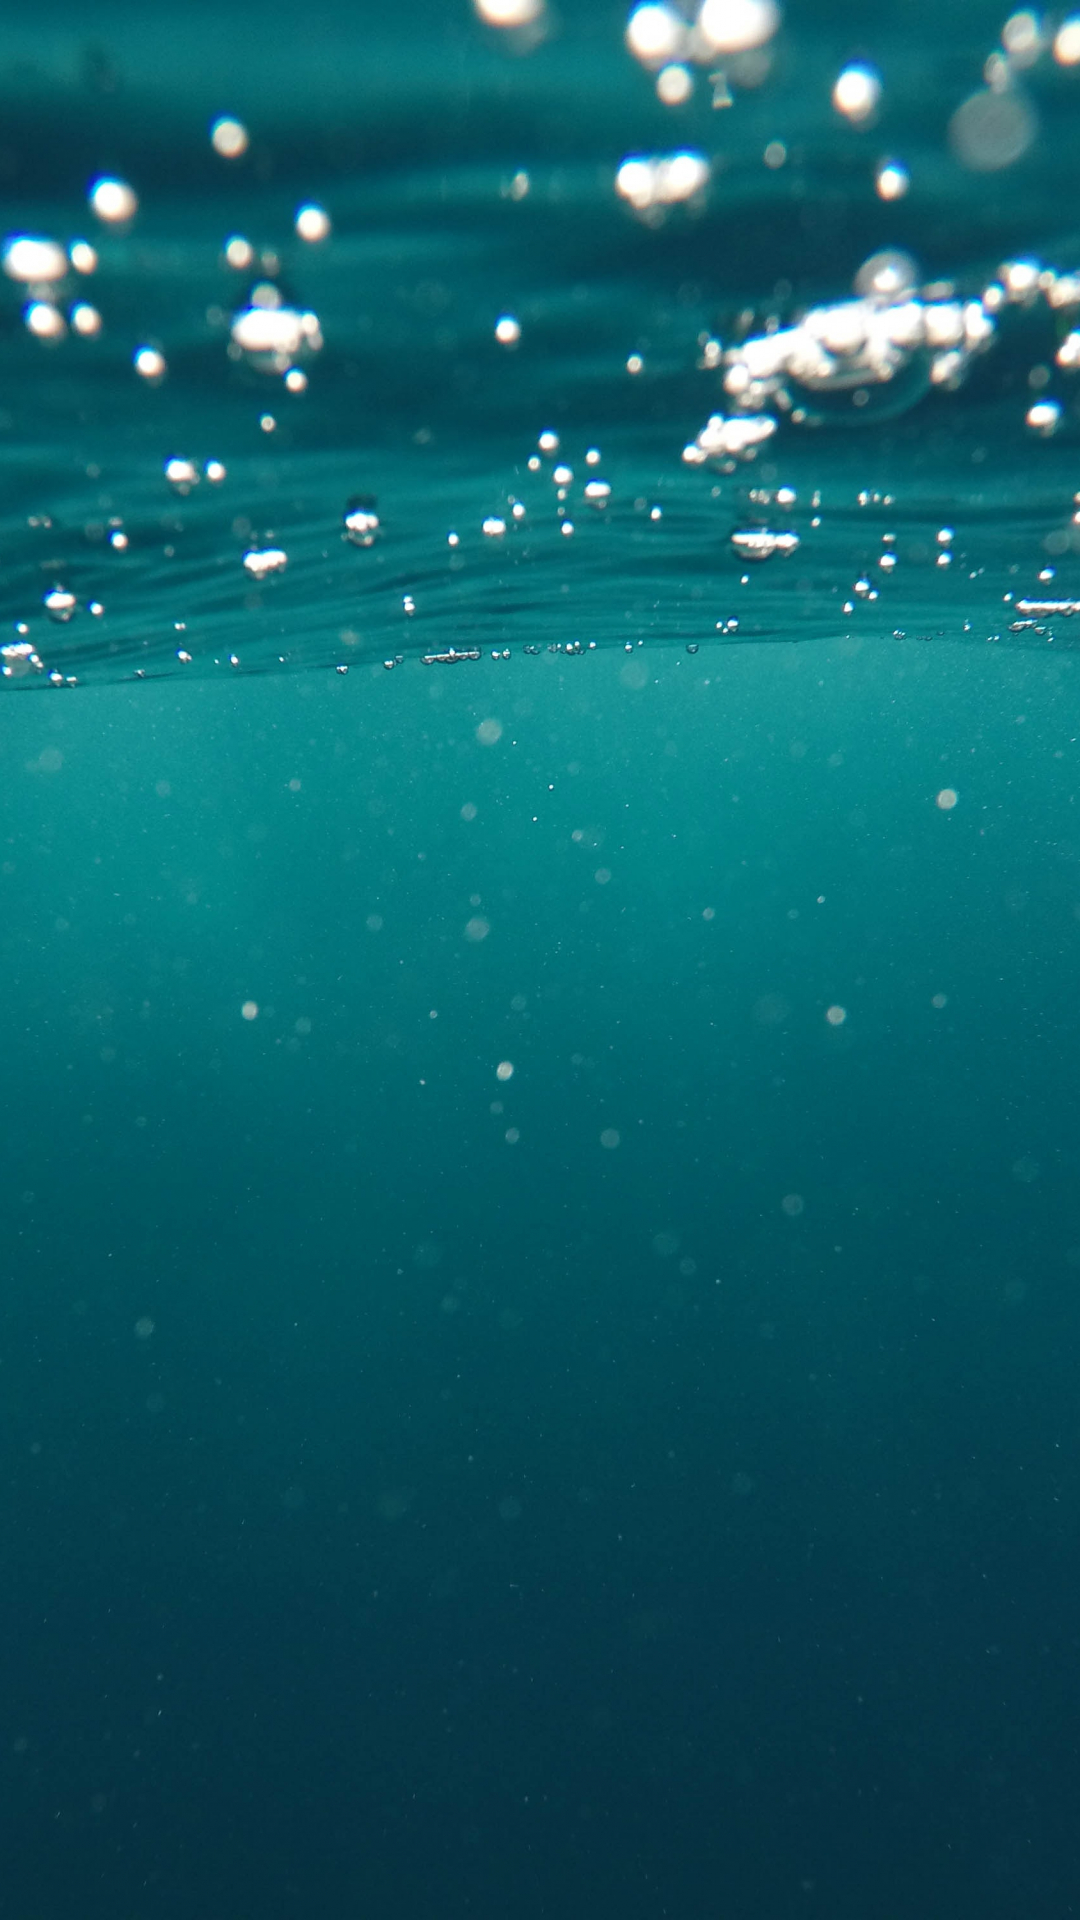 Underwater Ocean Iphone Wallpapers